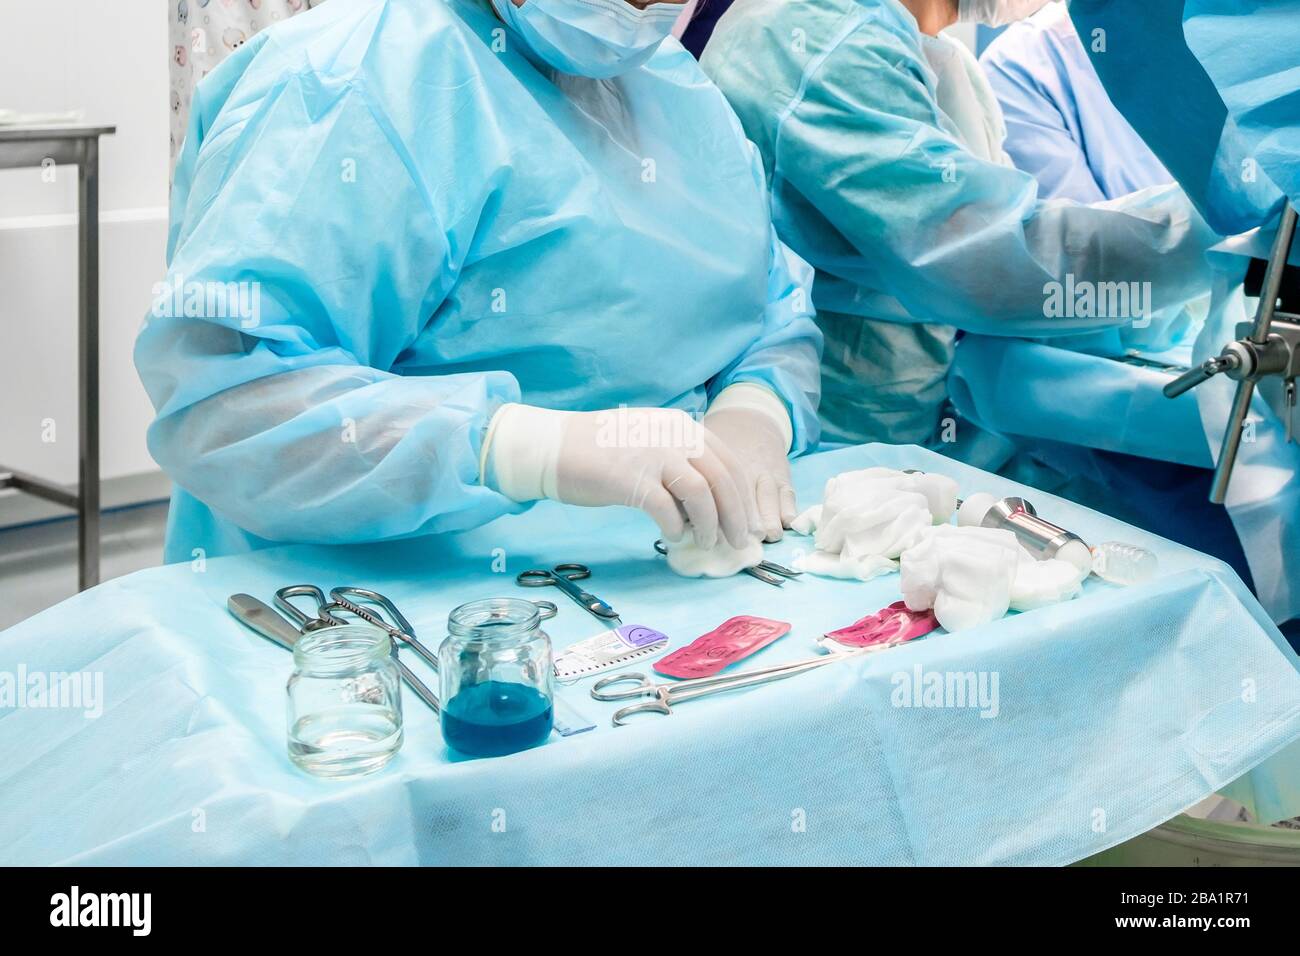 Strumenti chirurgici sterili e contenitori in vetro con soluzioni sul tavolo durante un intervento chirurgico. Sopra la tabella sono le mani di un chirurgo Foto Stock